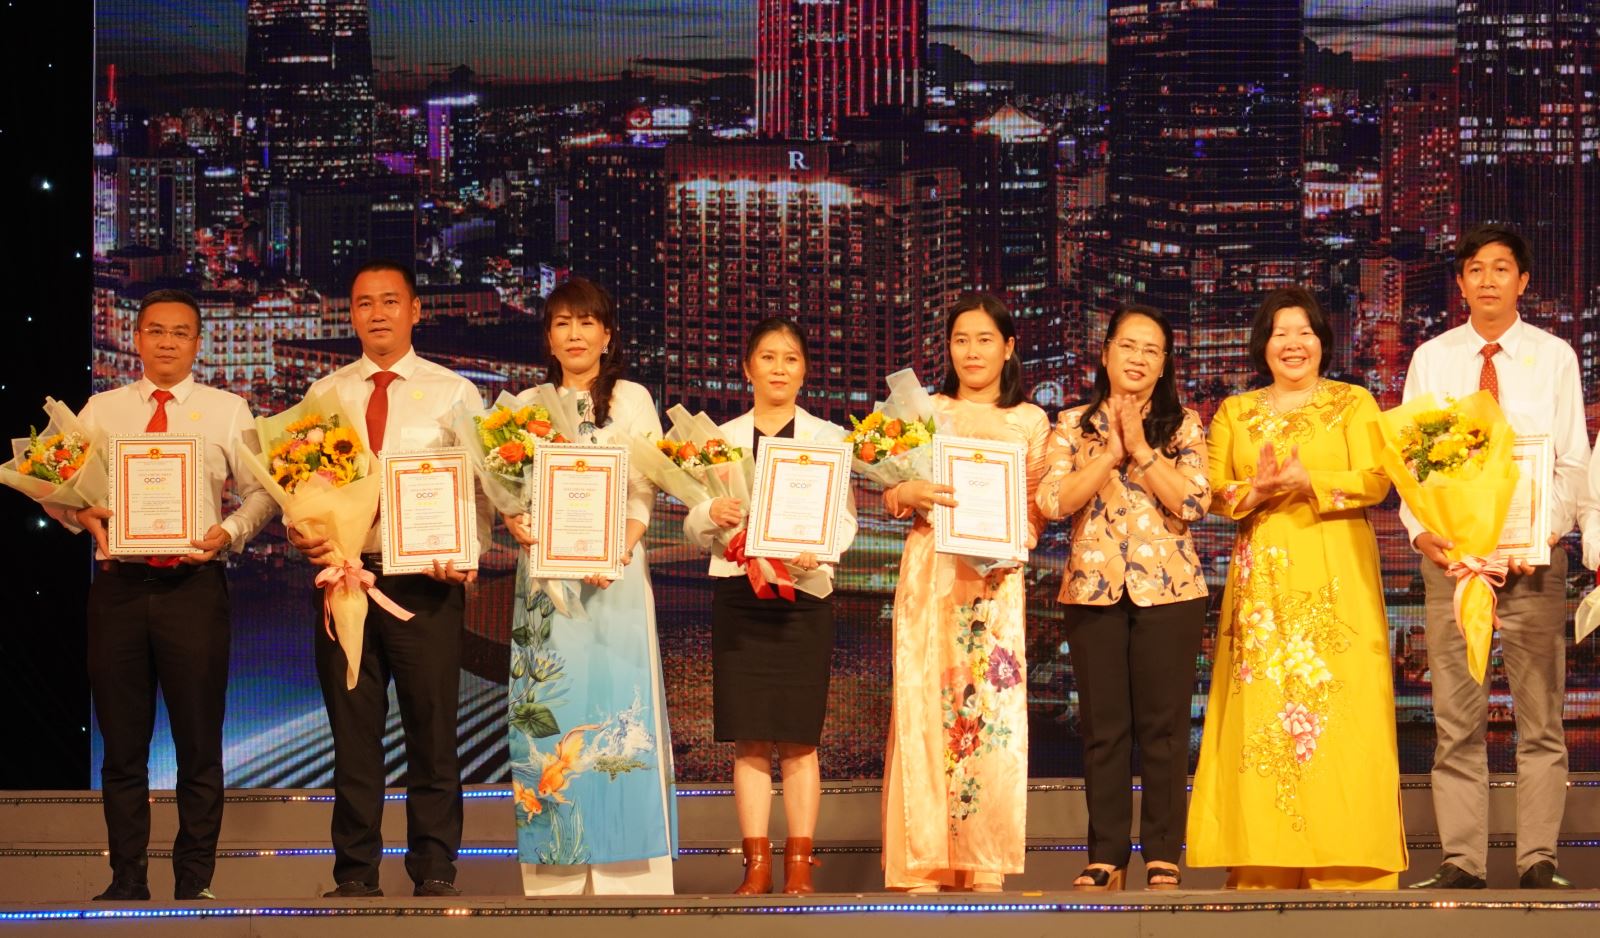 TP Hồ Chí Minh công bố và trao giấy chứng nhận cho 39 sản phẩm OCOP - Ảnh 1.